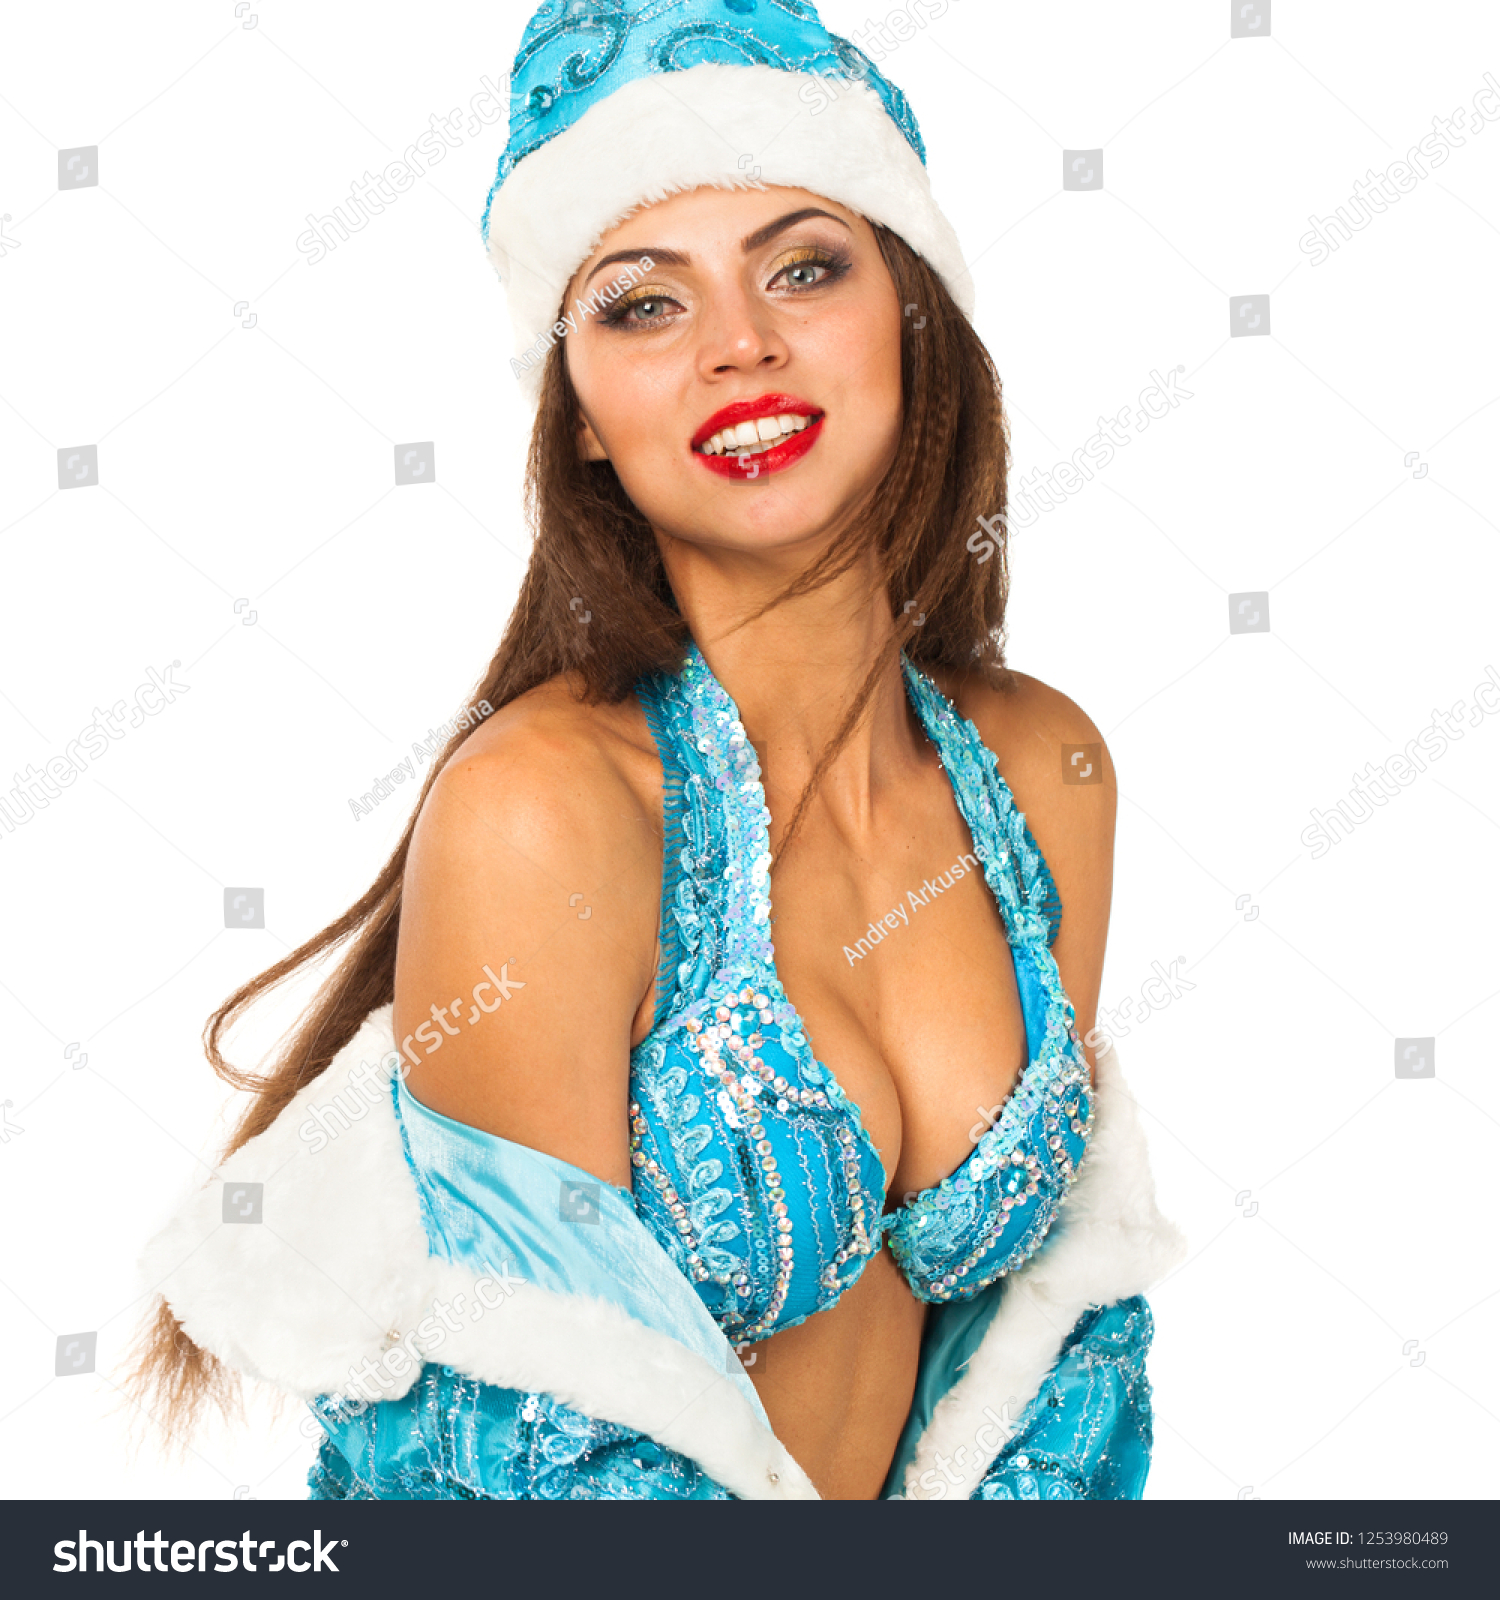 russian teen big boobs sex photo